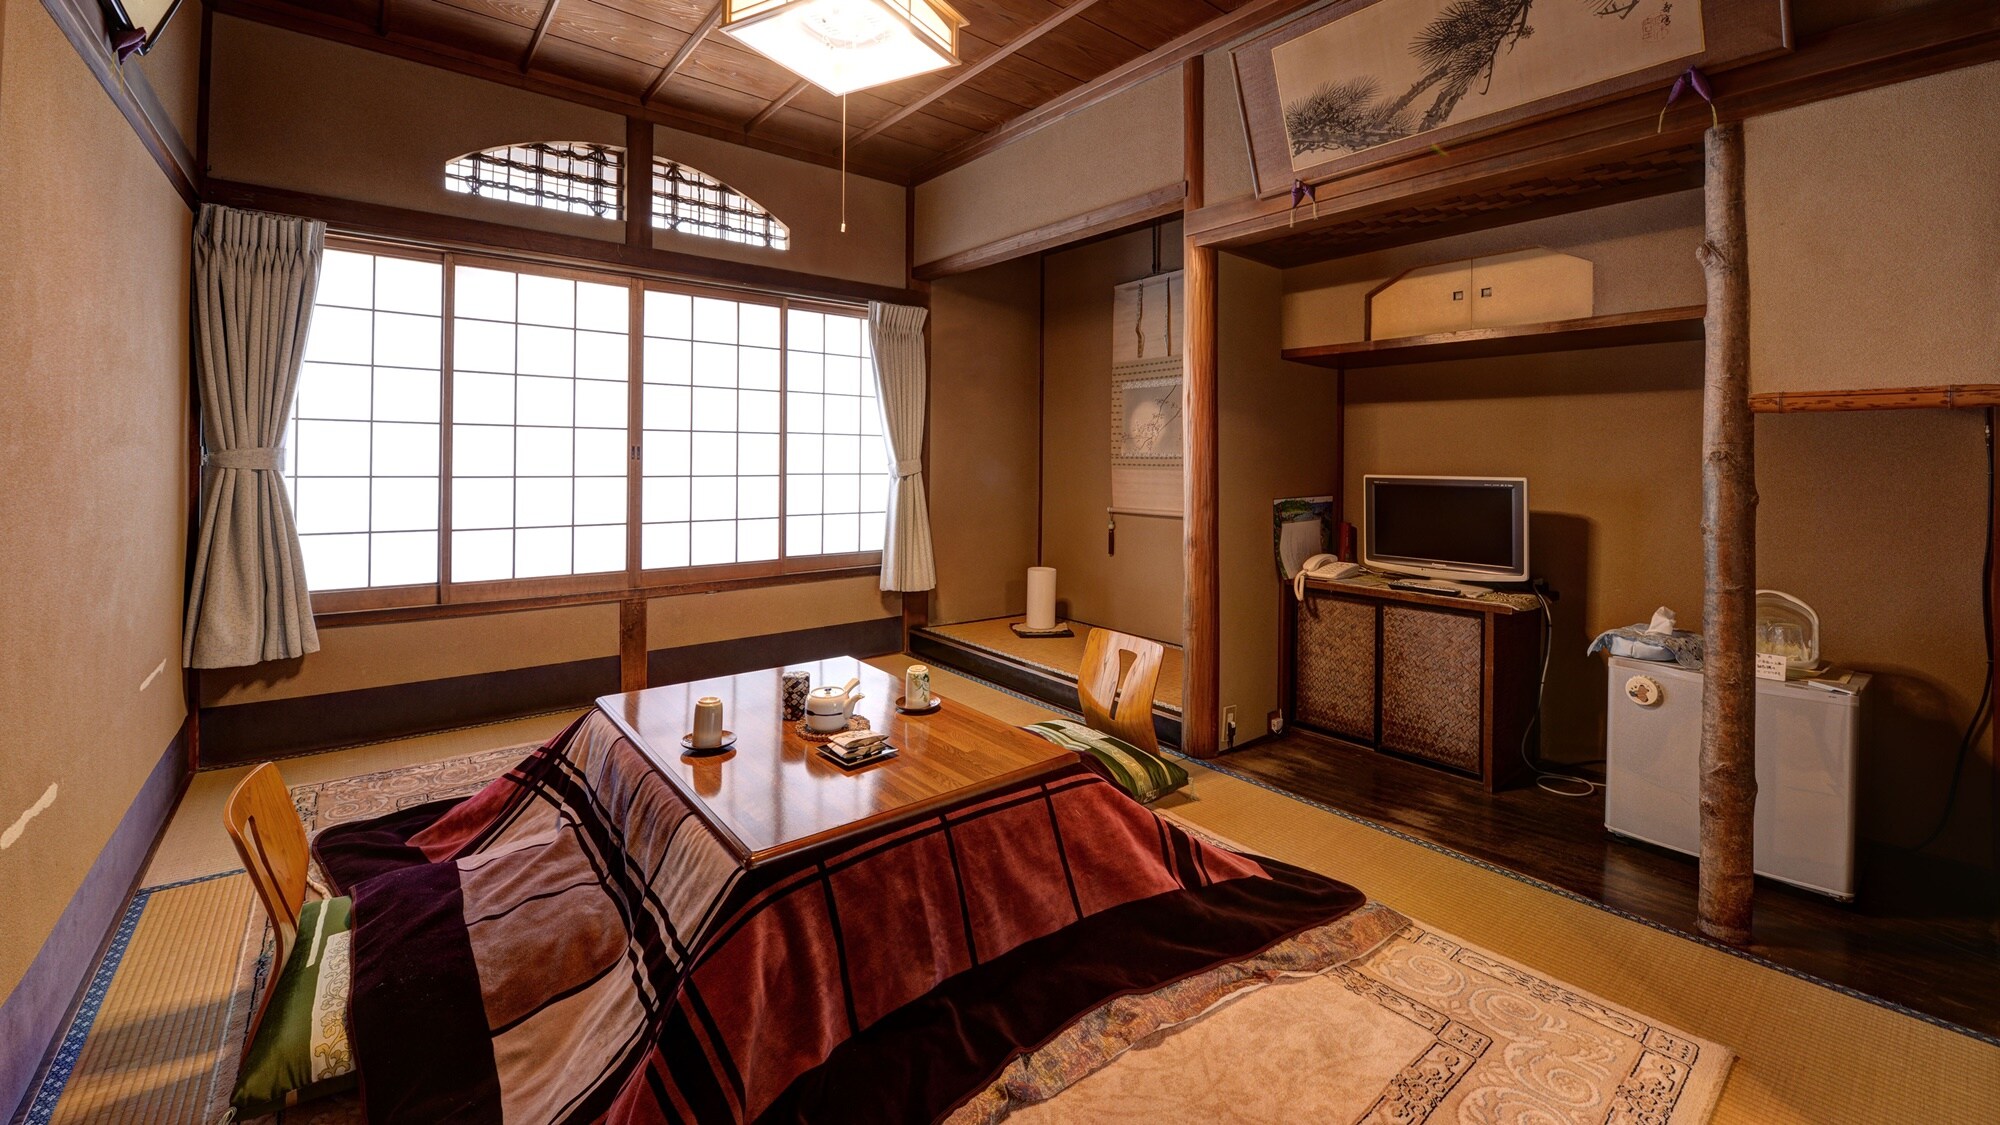 * [Kamar bergaya Jepang dengan 6 tikar tatami] Nikmati cita rasa konstruksi kayu.